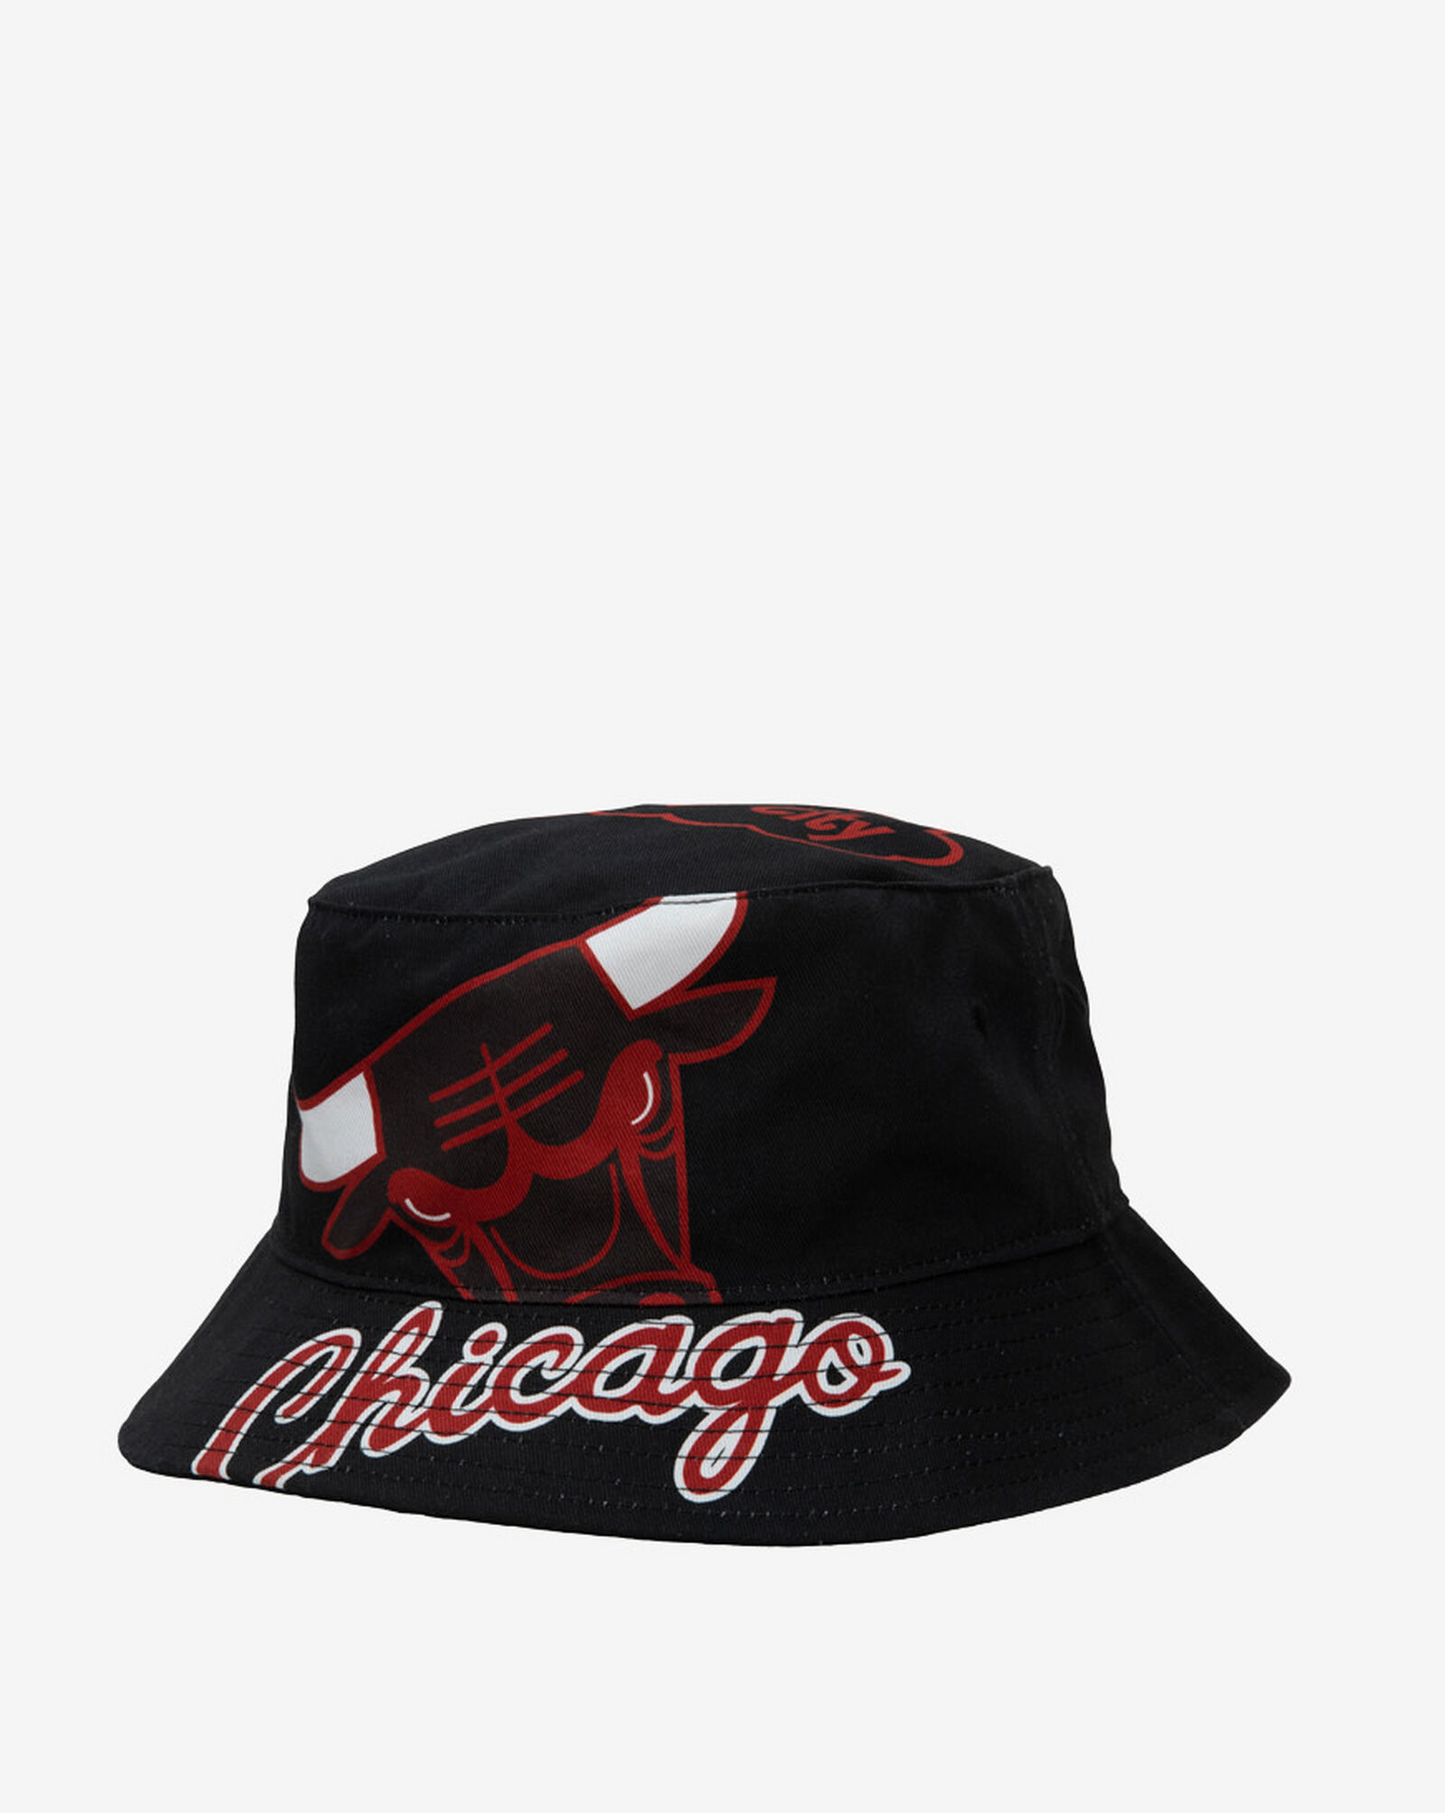 CHICAGO BULLS MEN'S CUT UP BUCKET HAT